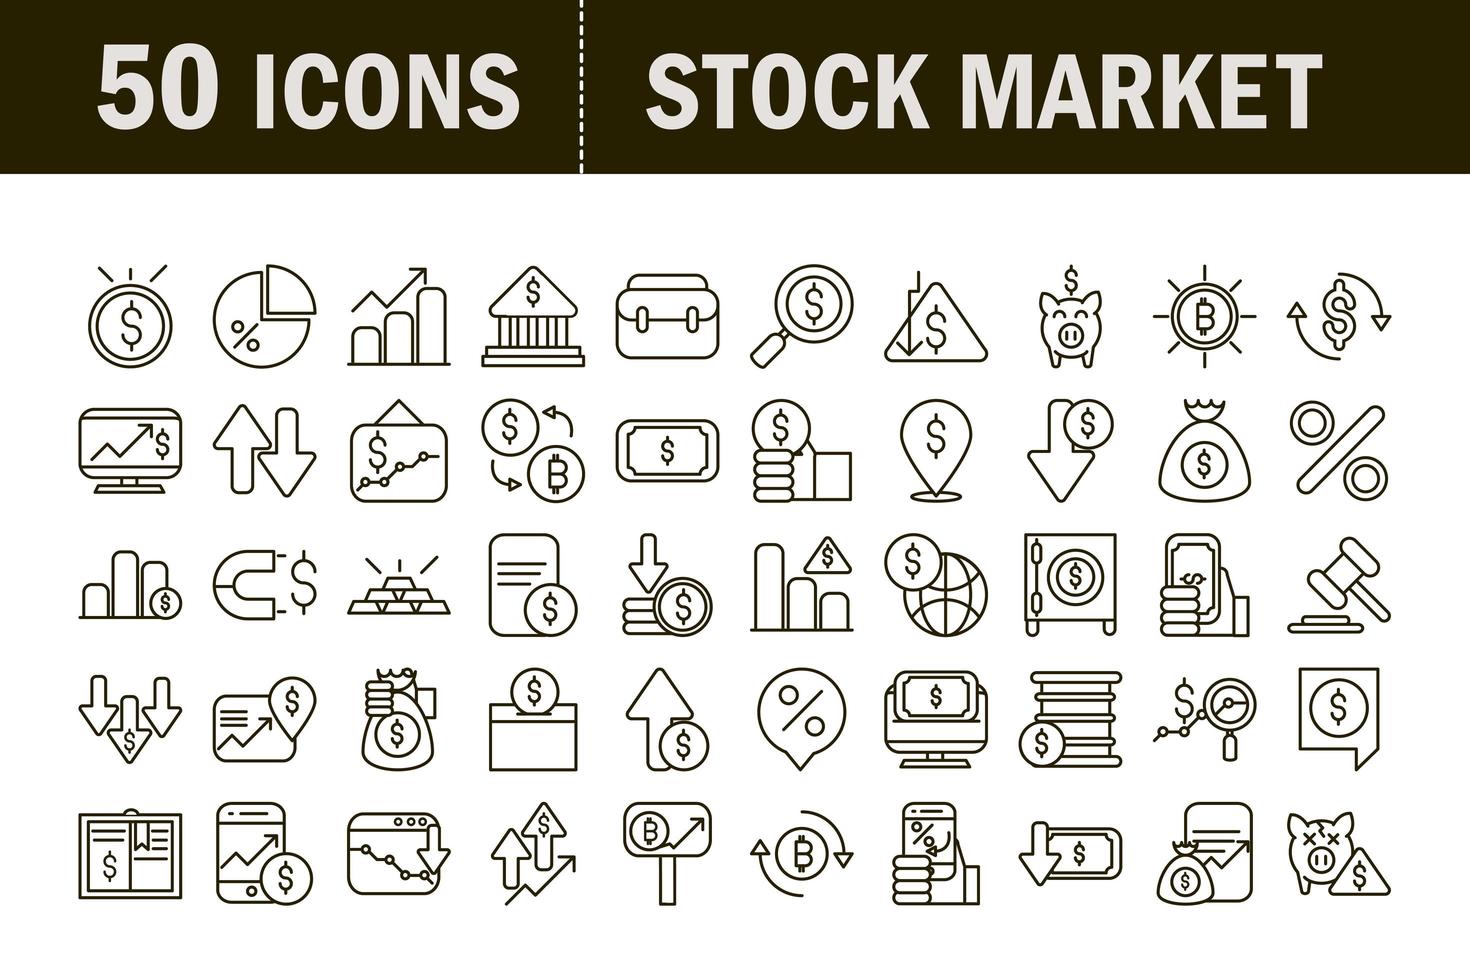 marché boursier et jeu d'icônes de pictogramme financier vecteur